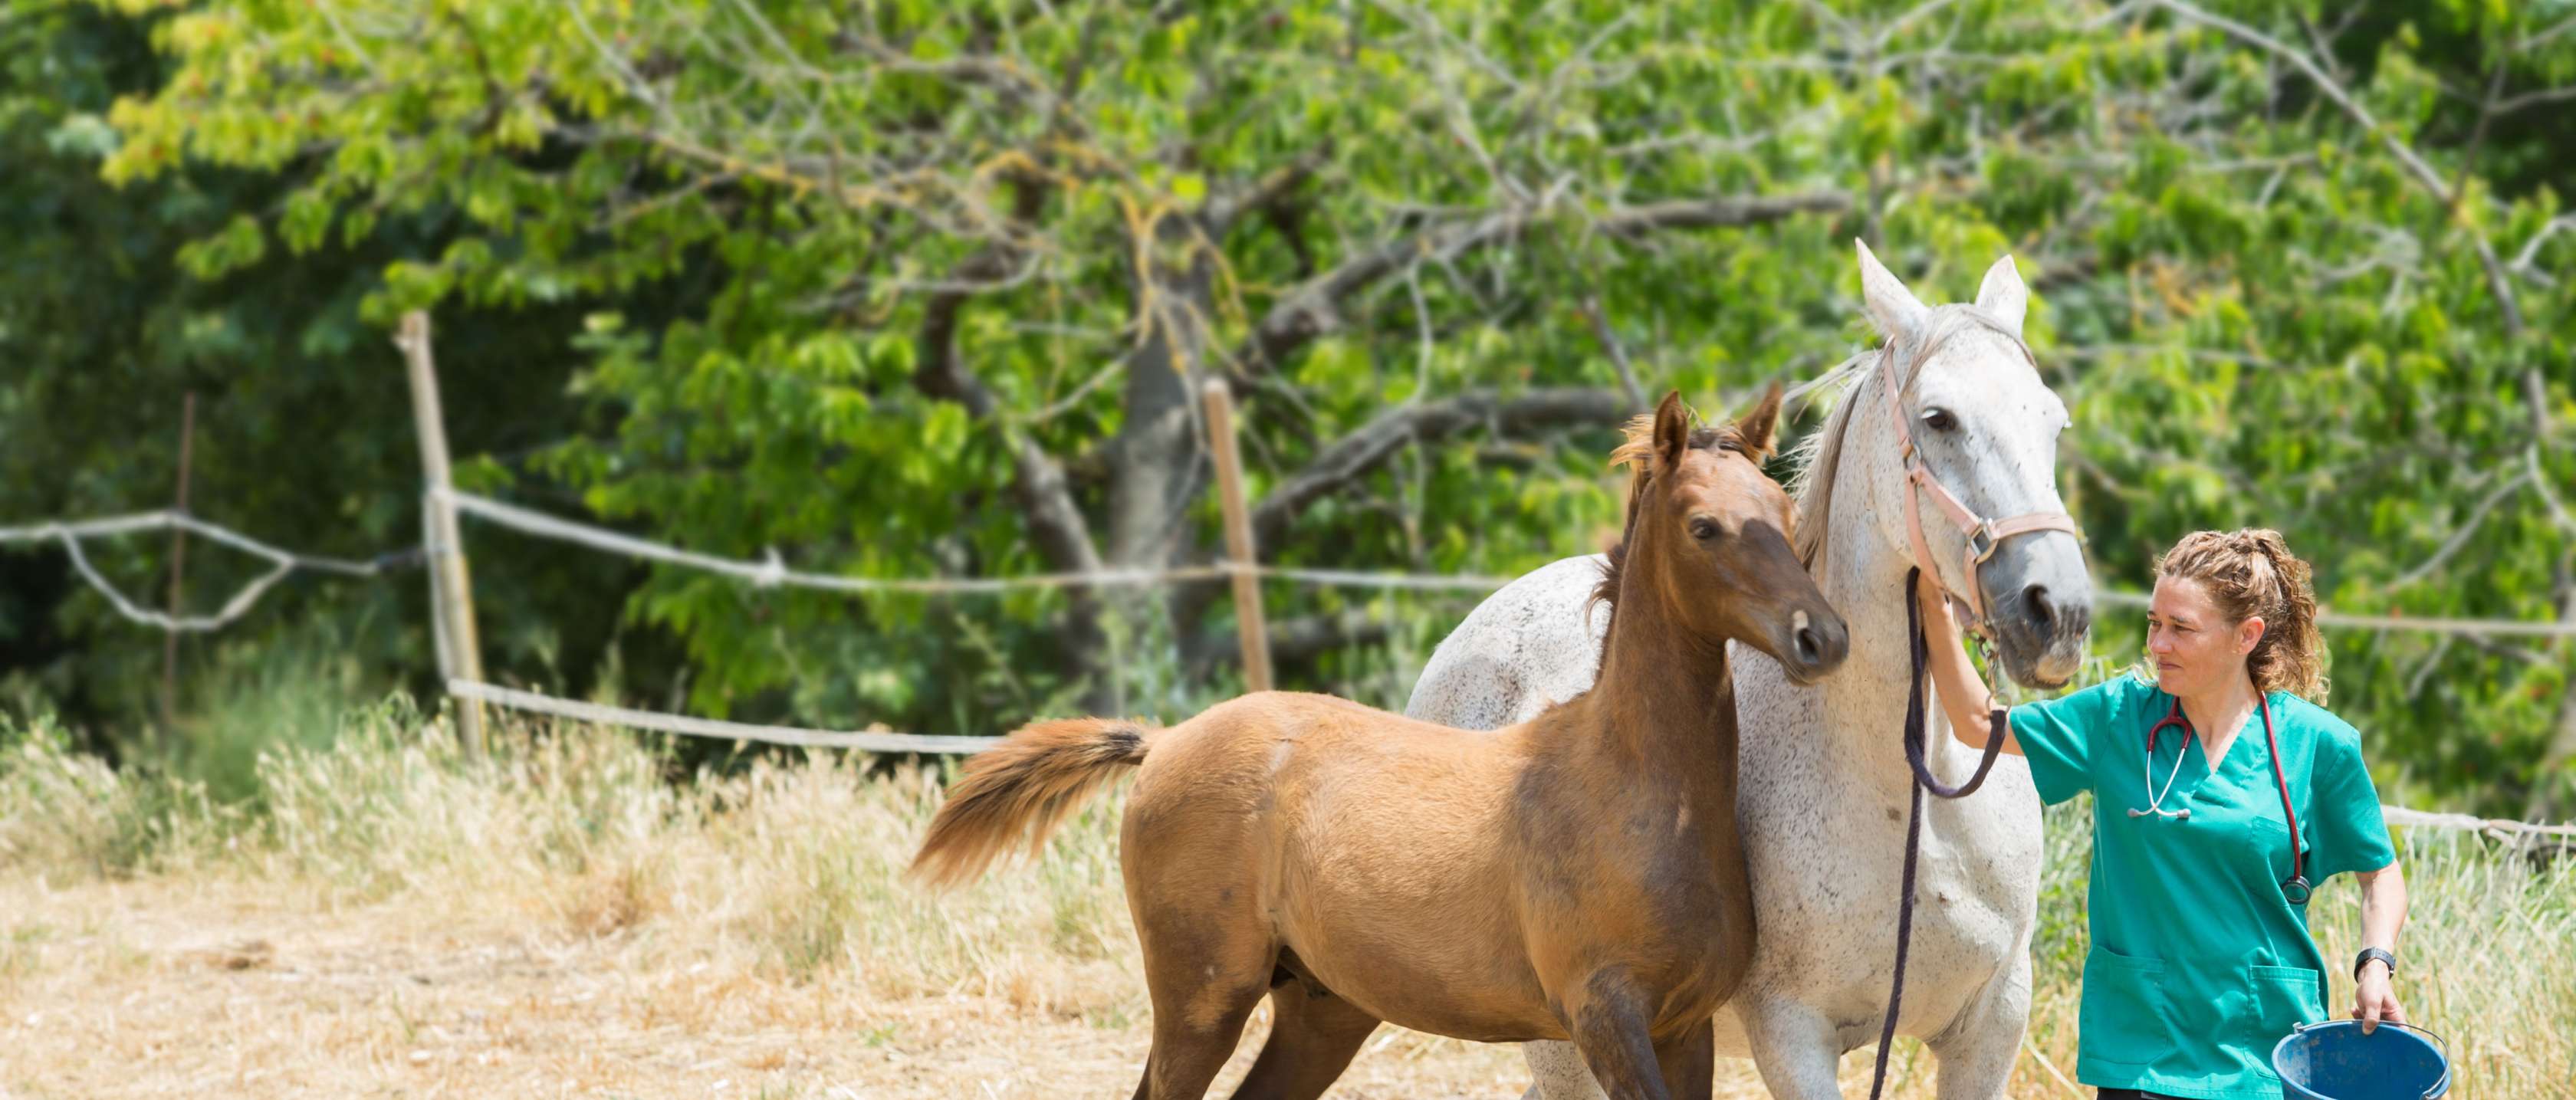 Tierärztin führt eine Stute und ihr Fohlen von der Koppel, ohne eine Pferdekrankenversicherung können hohe Kosten entstehen.